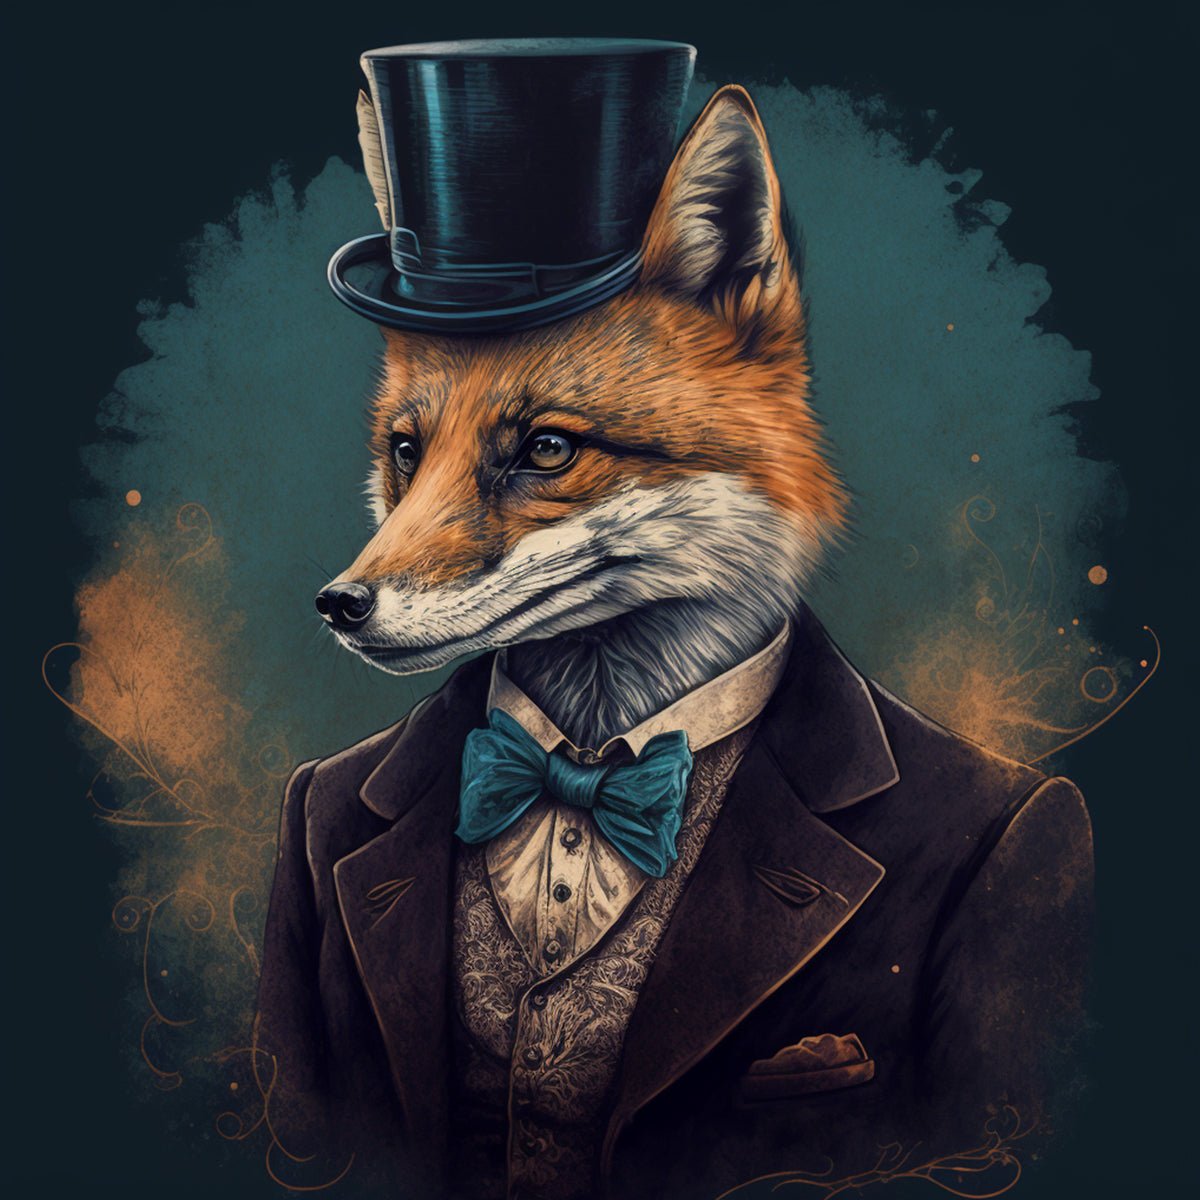 Gentleman Fox Sticker Sheets